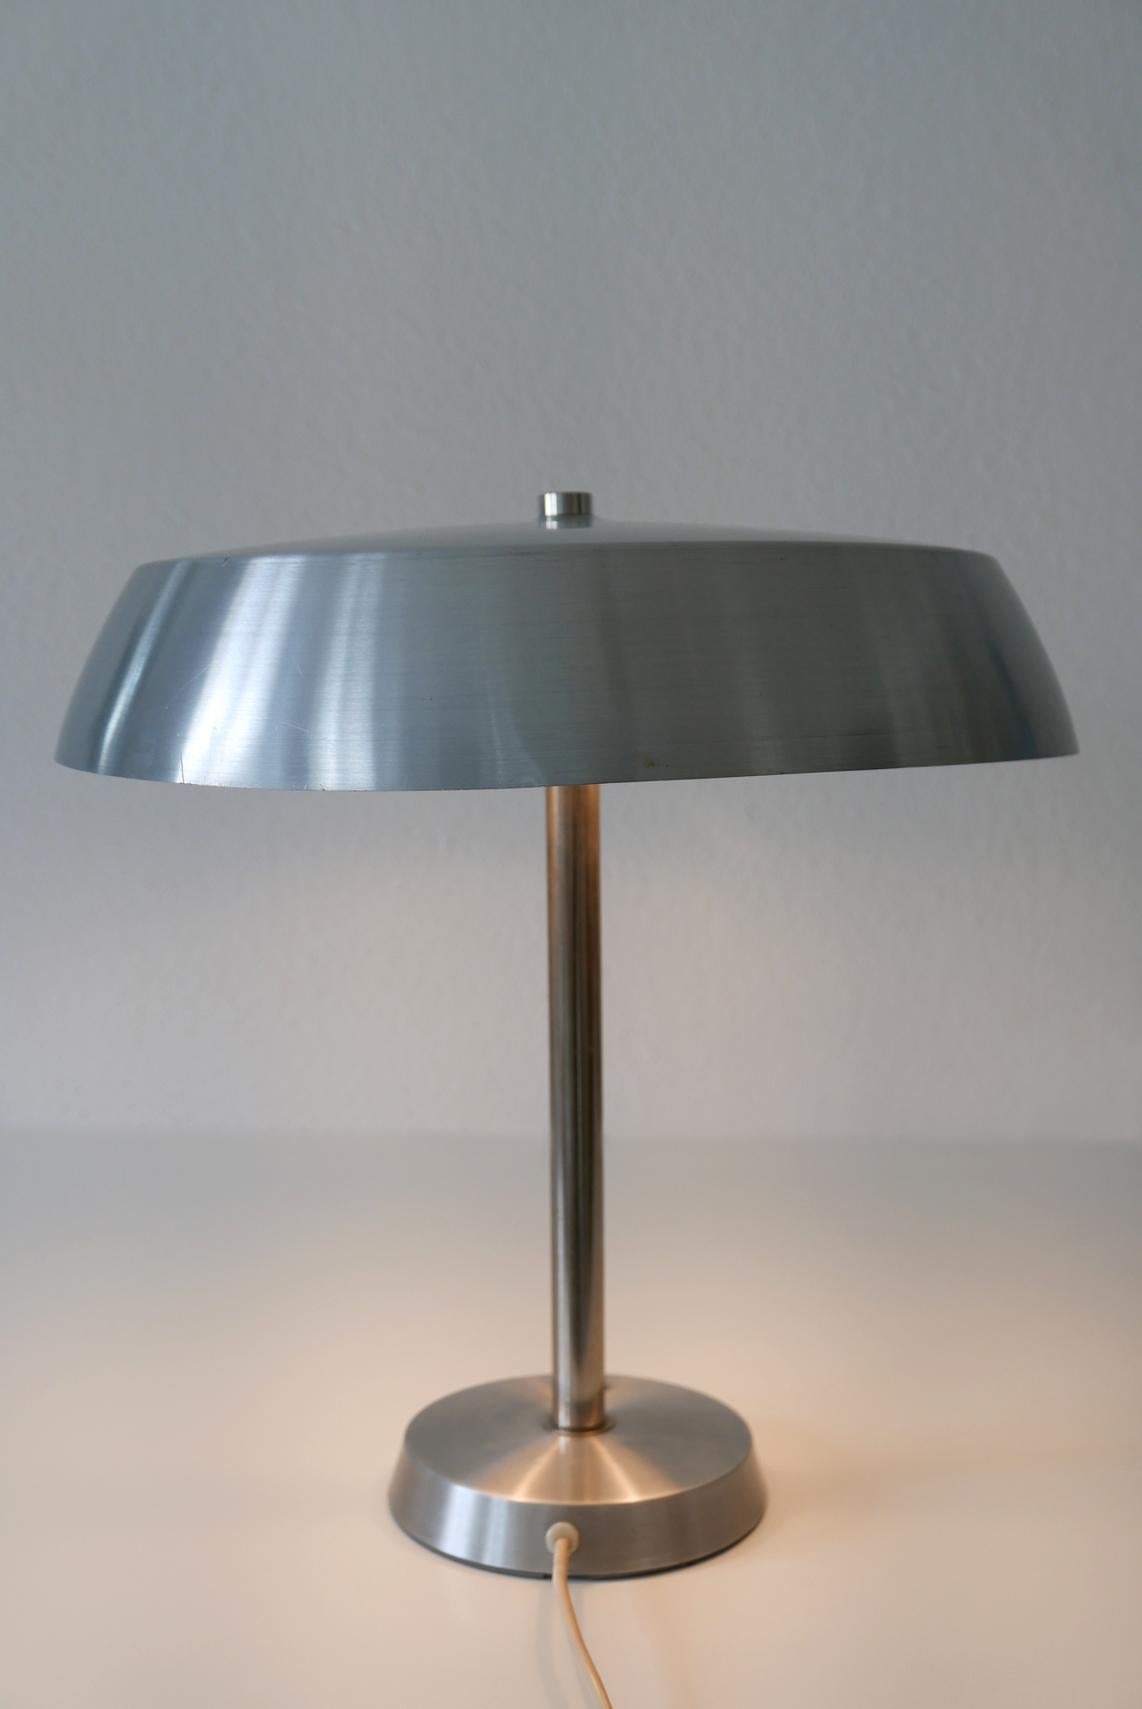 Elegante Mid-Century Modern Tischleuchte von SIS, 1960er Jahre, Deutschland.

Ausgeführt in poliertem Aluminiumblech und vernickeltem Stahlrohr. Die Lampe benötigt 2 x E27 Edison-Schraubglühbirnen, ist verkabelt und in einem funktionsfähigen